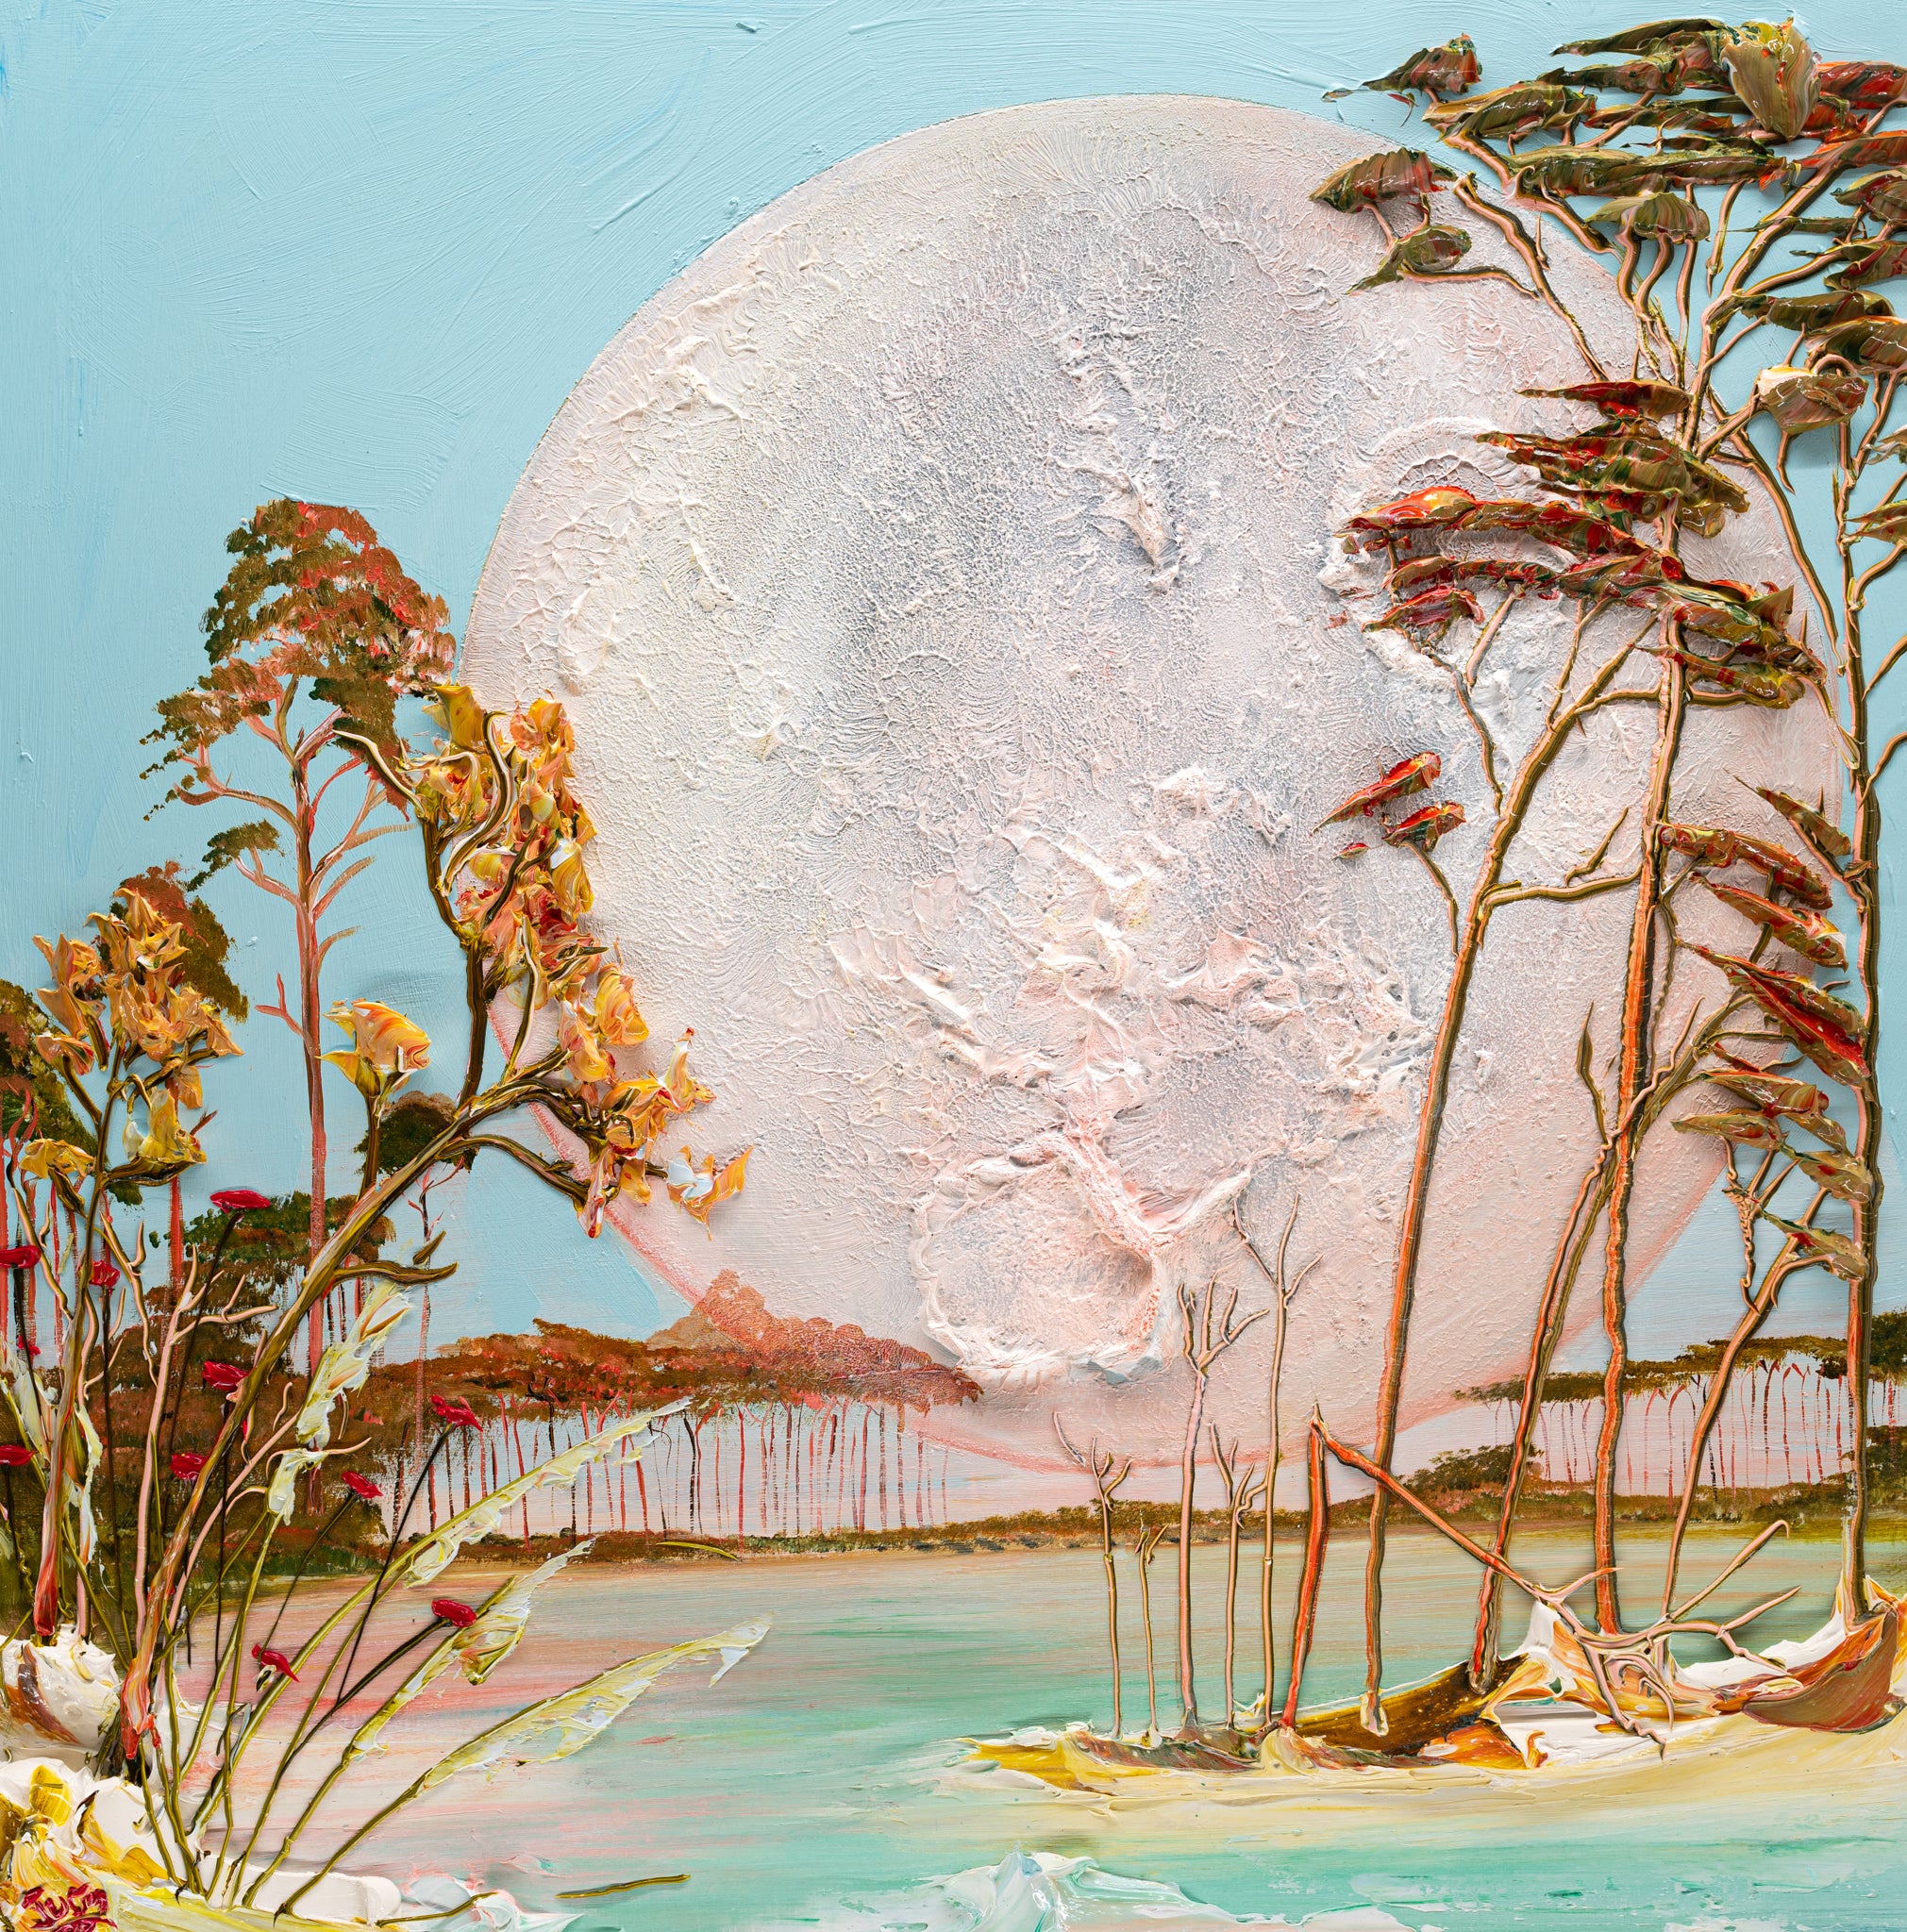 Moonscape, 36x36